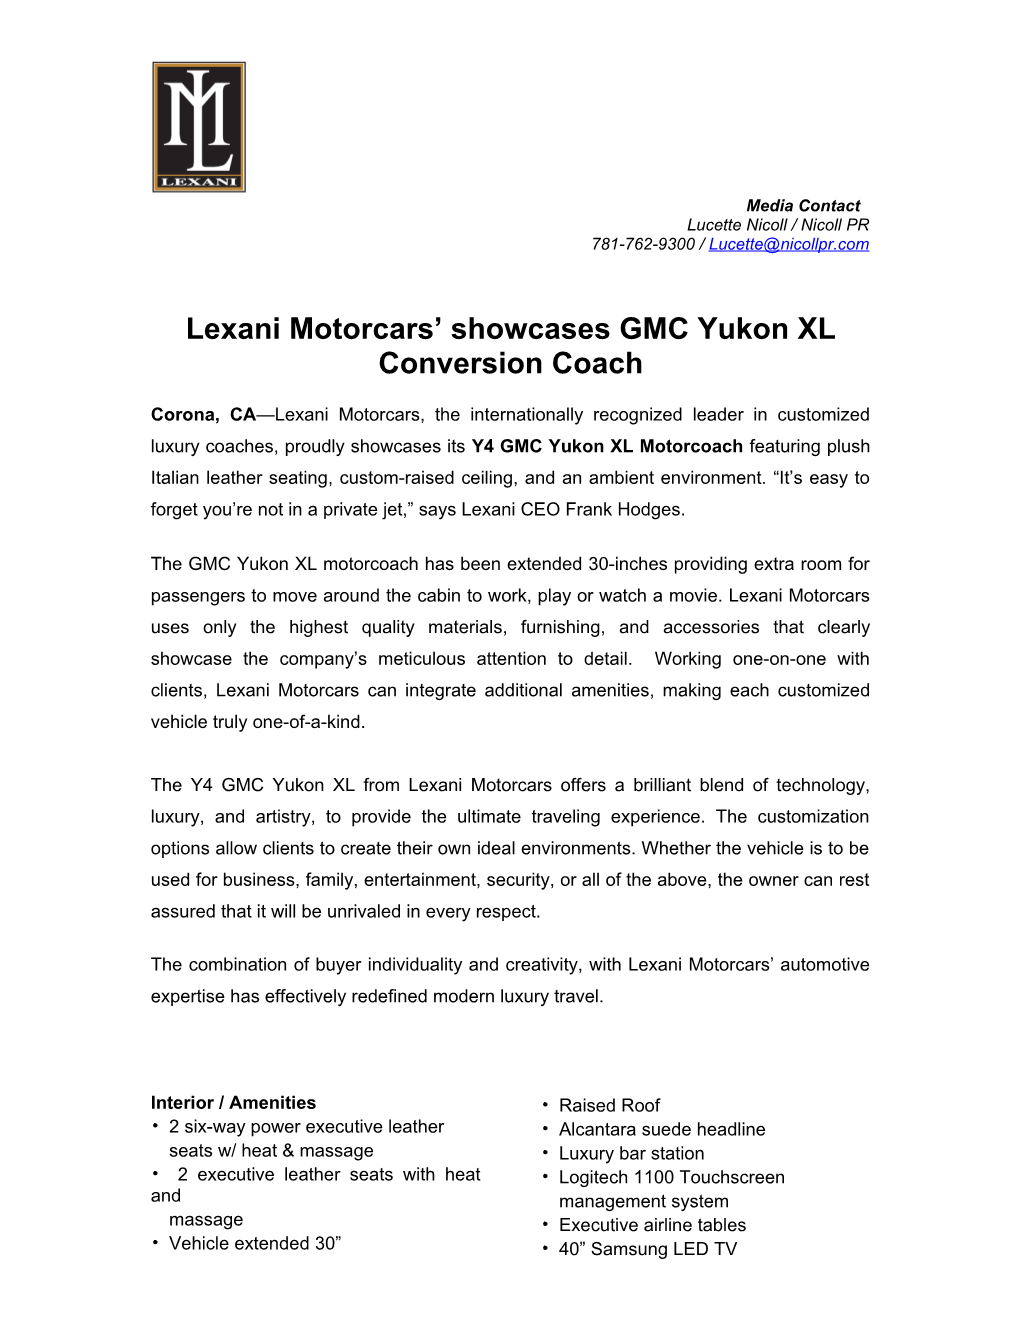 Lexani Motorcars Showcases GMC Yukon XL Conversion Coach